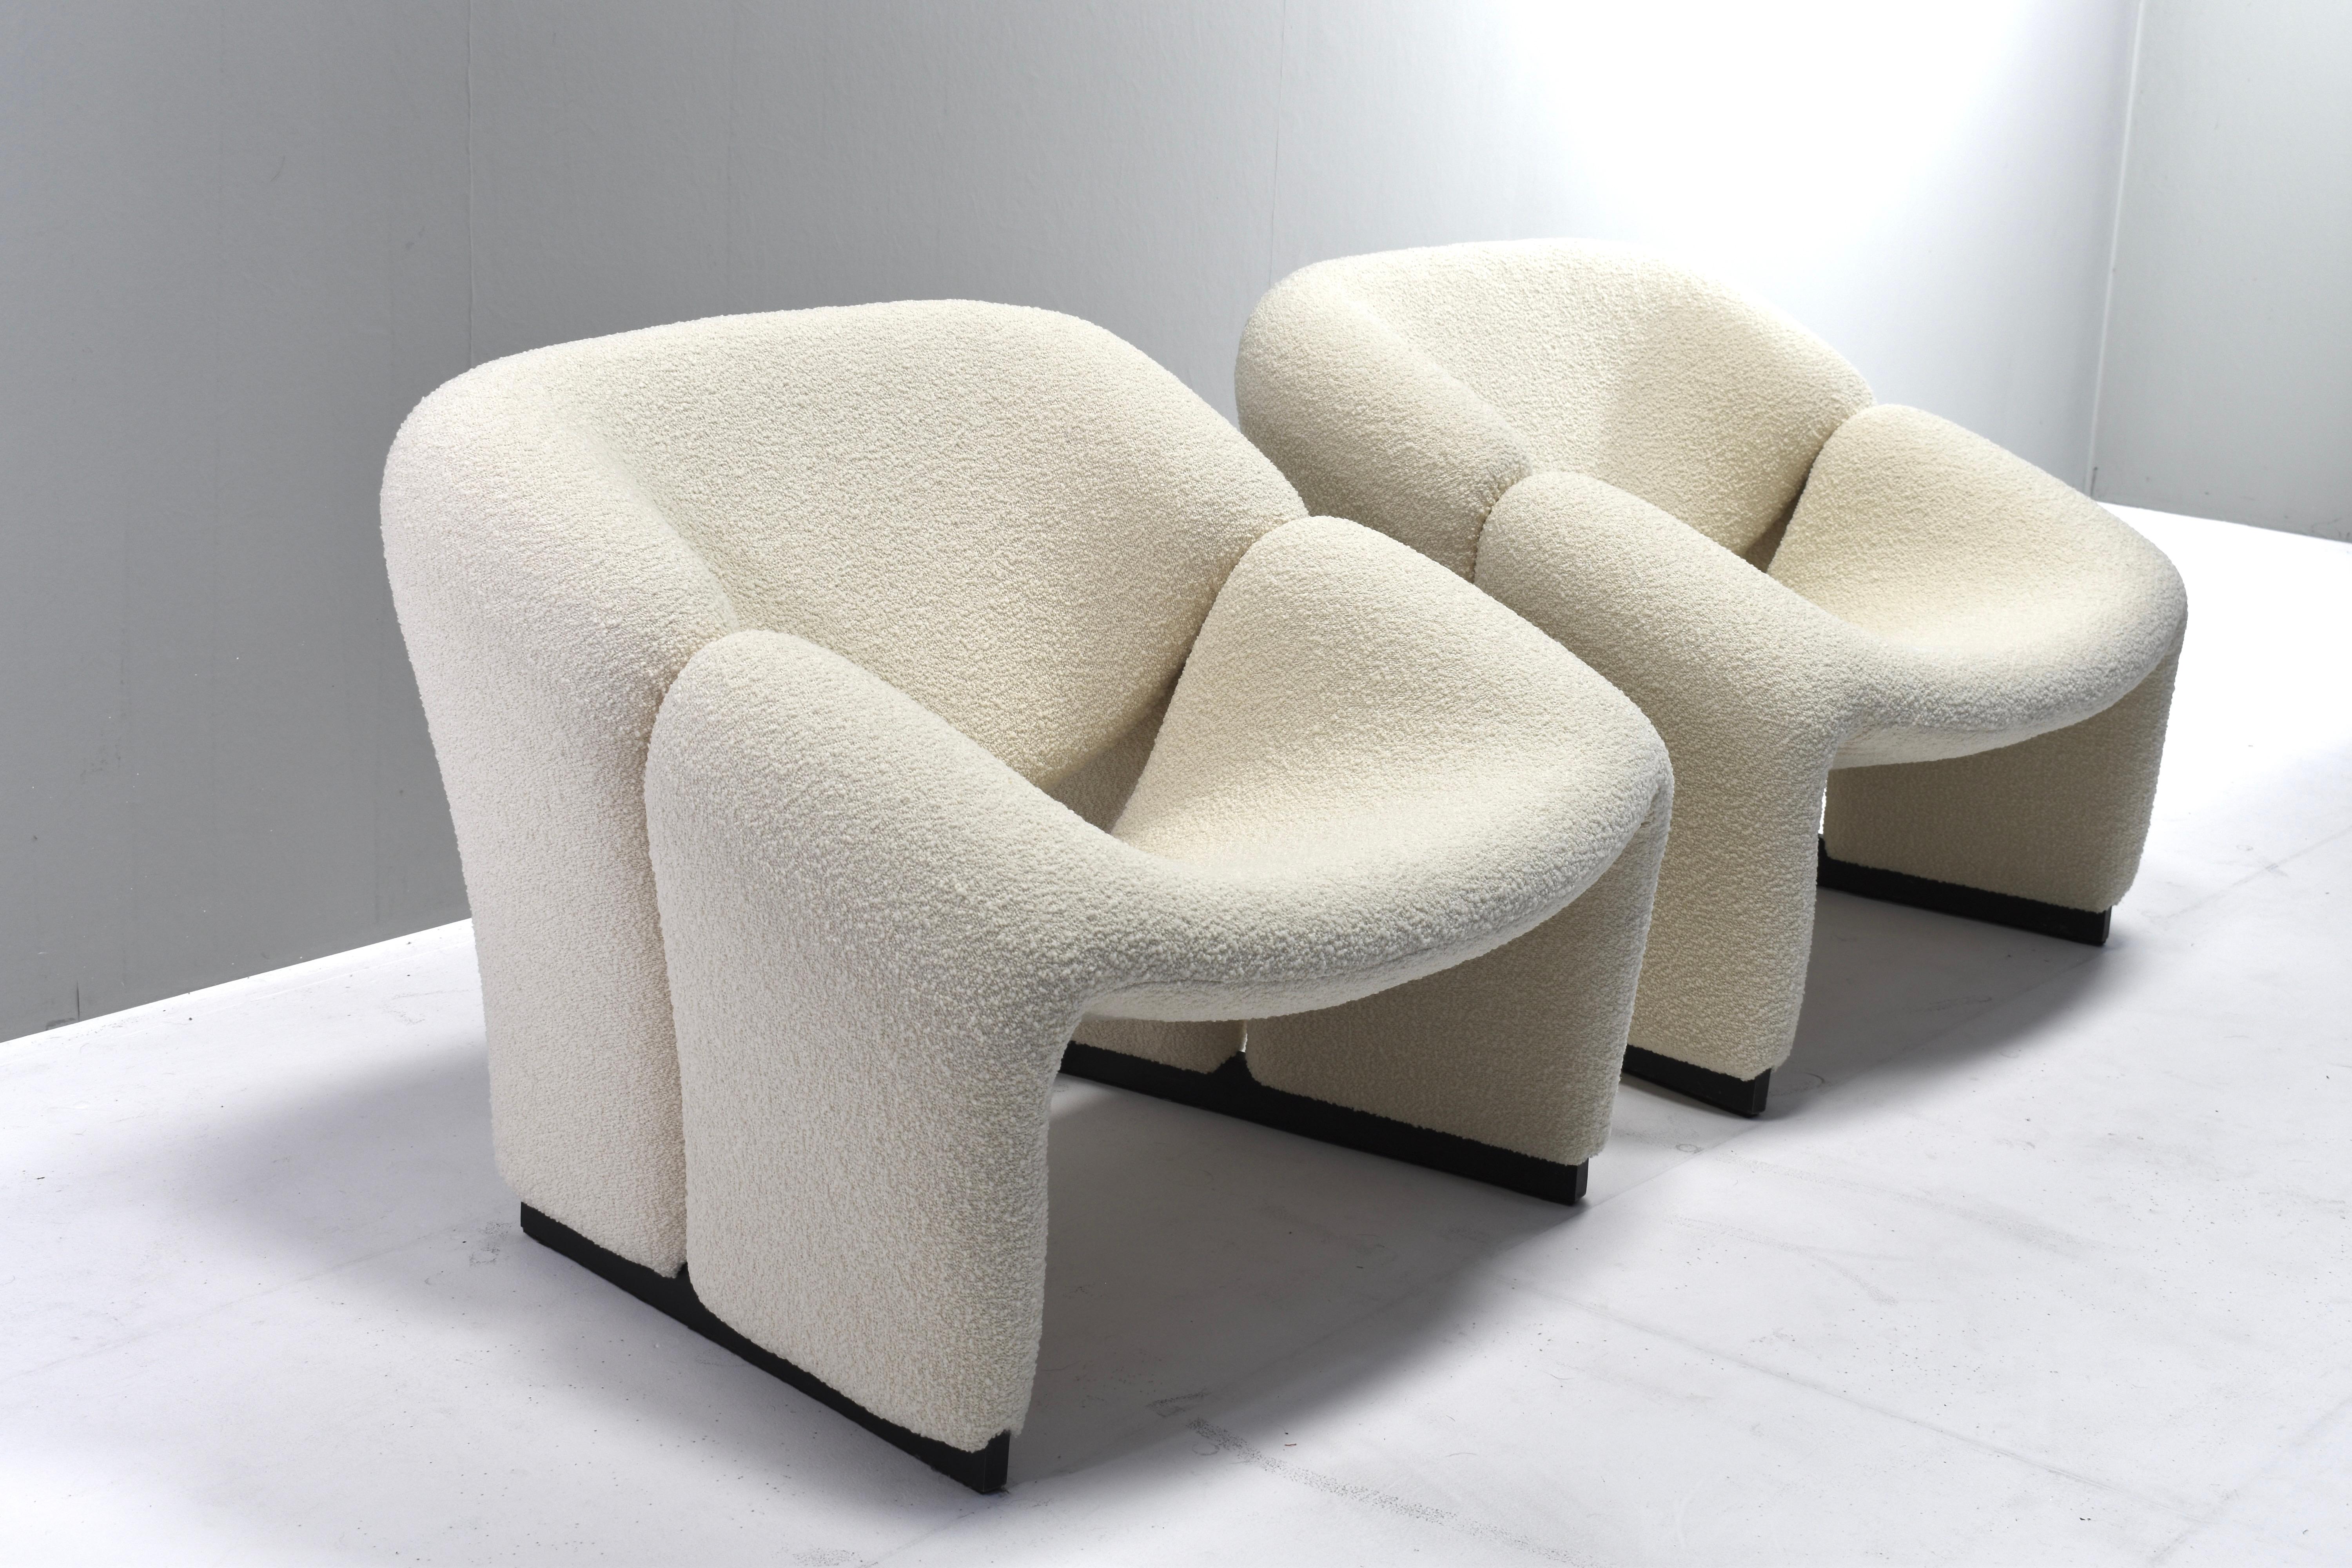 Paire de chaises longues 'M' 'Groovy' F580 1ère édition par Pierre Paulin pour Artifort - Pays-Bas, 1966.
Les chaises ont été superbement retapissées par notre artisan tapissier dans un magnifique tissu de laine bouclé blanc cassé provenant de